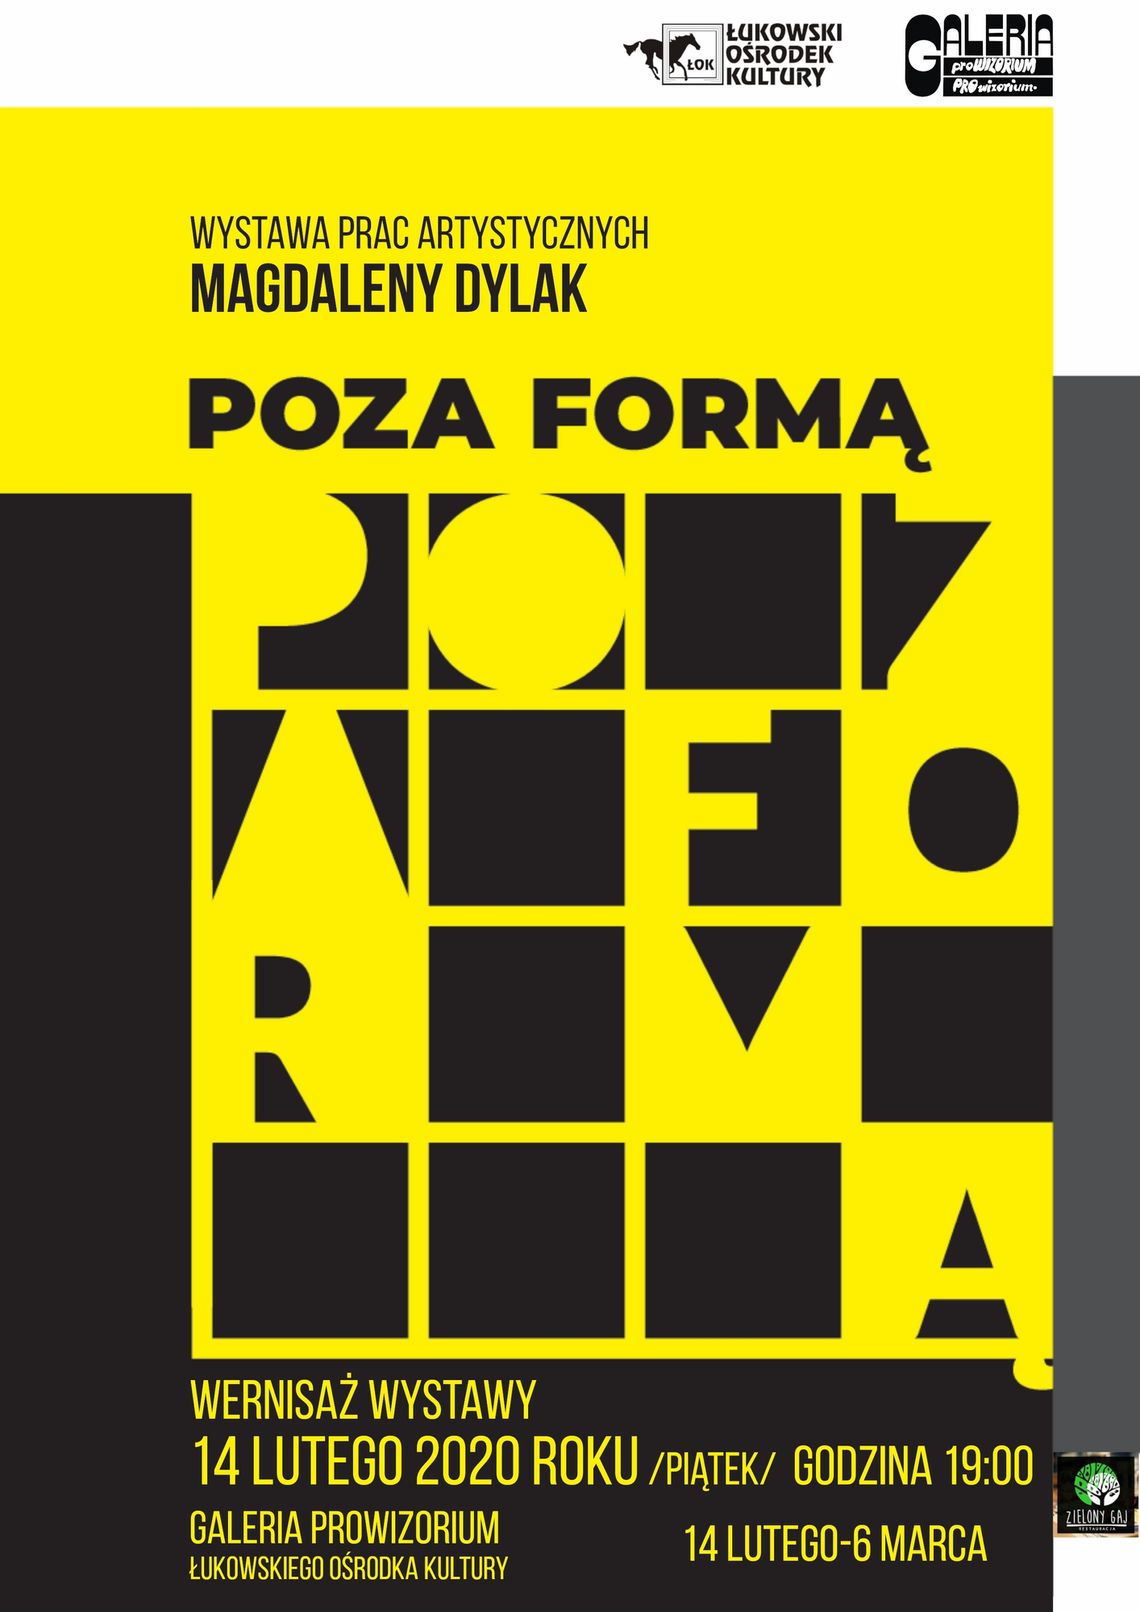 Wystawa prac artystycznych Magdaleny Dylak "Poza formą" /14 lutego-6 marca 2020